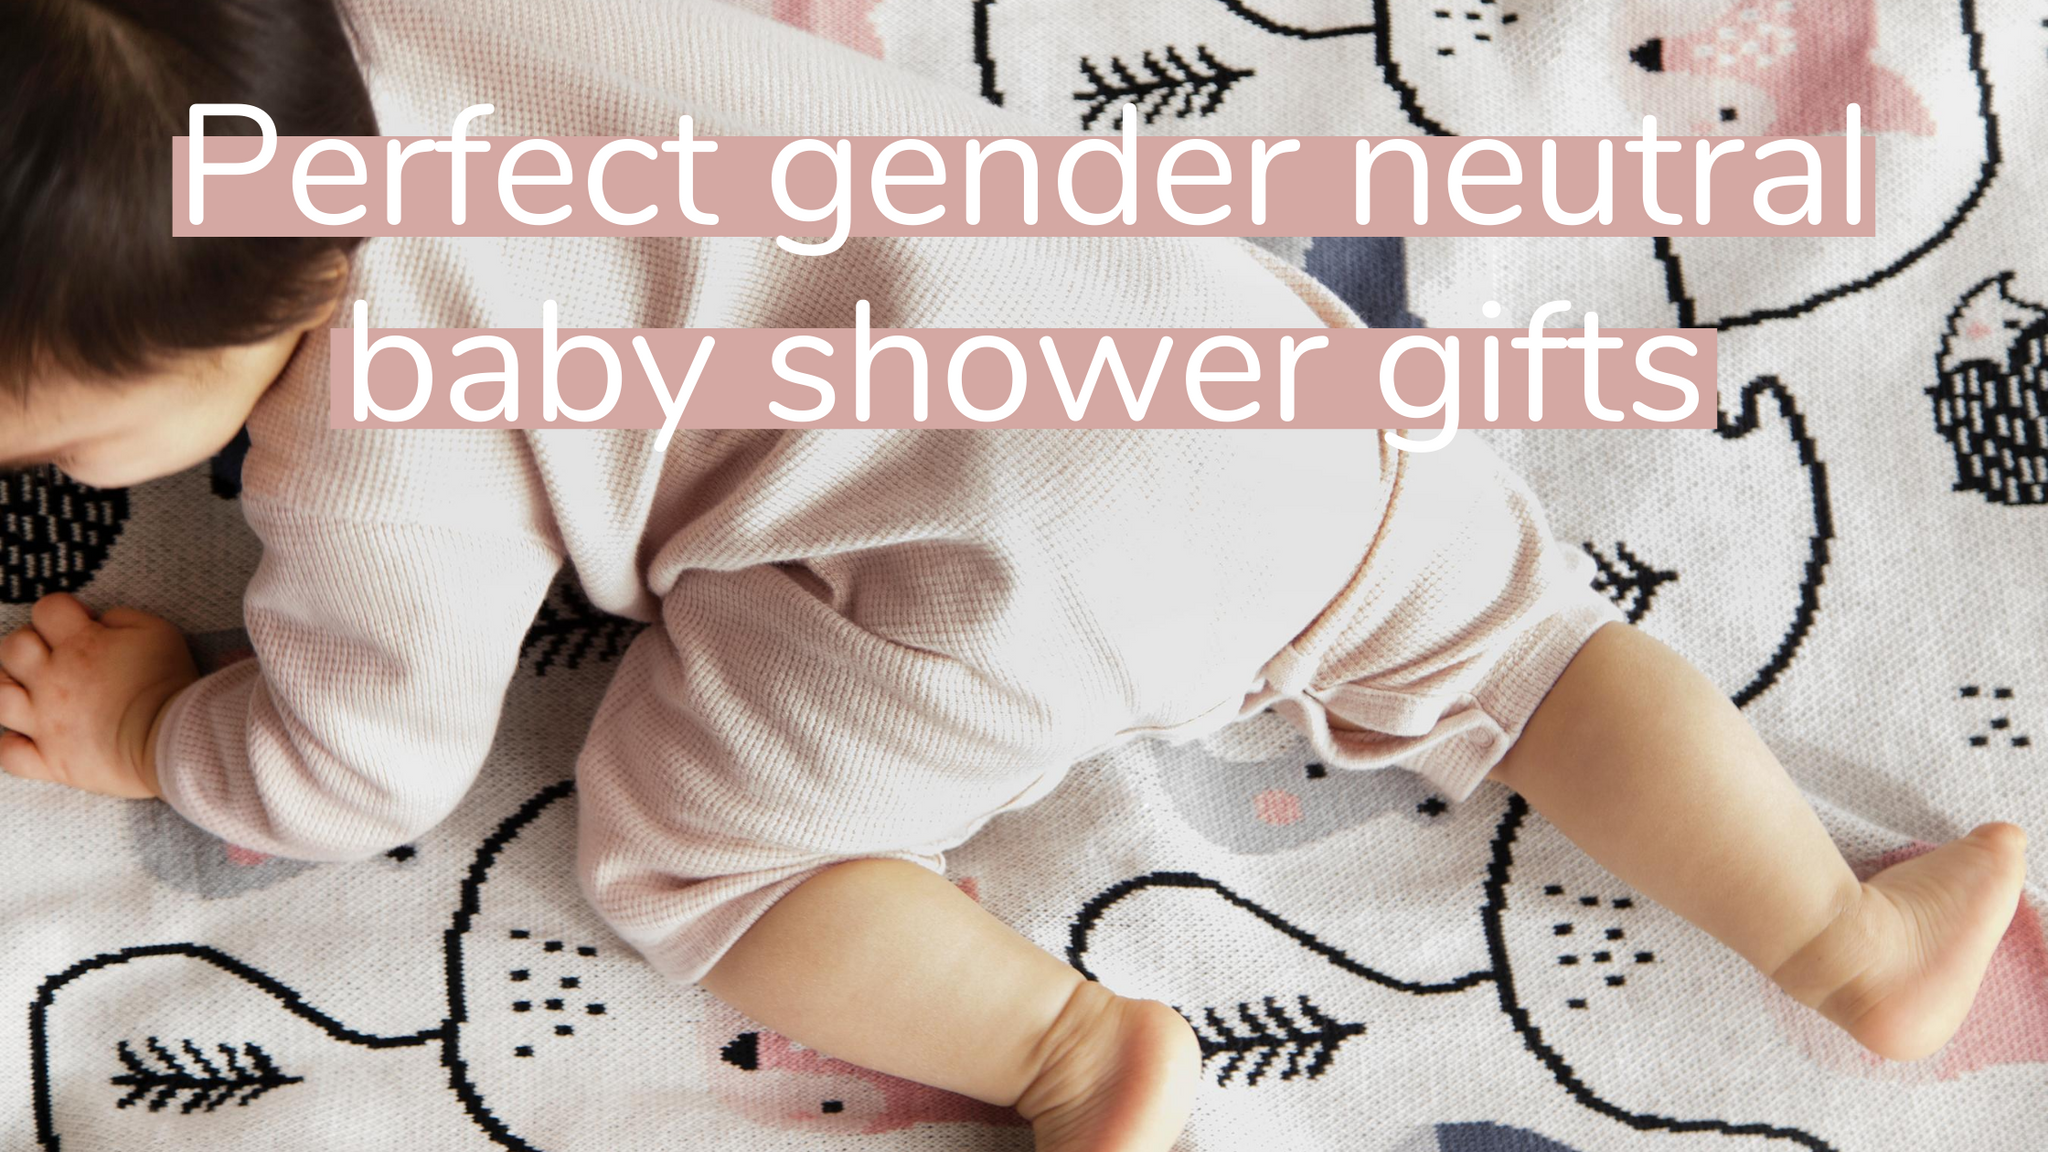 The Best Gender-Neutral Baby Shower Gift Ideas